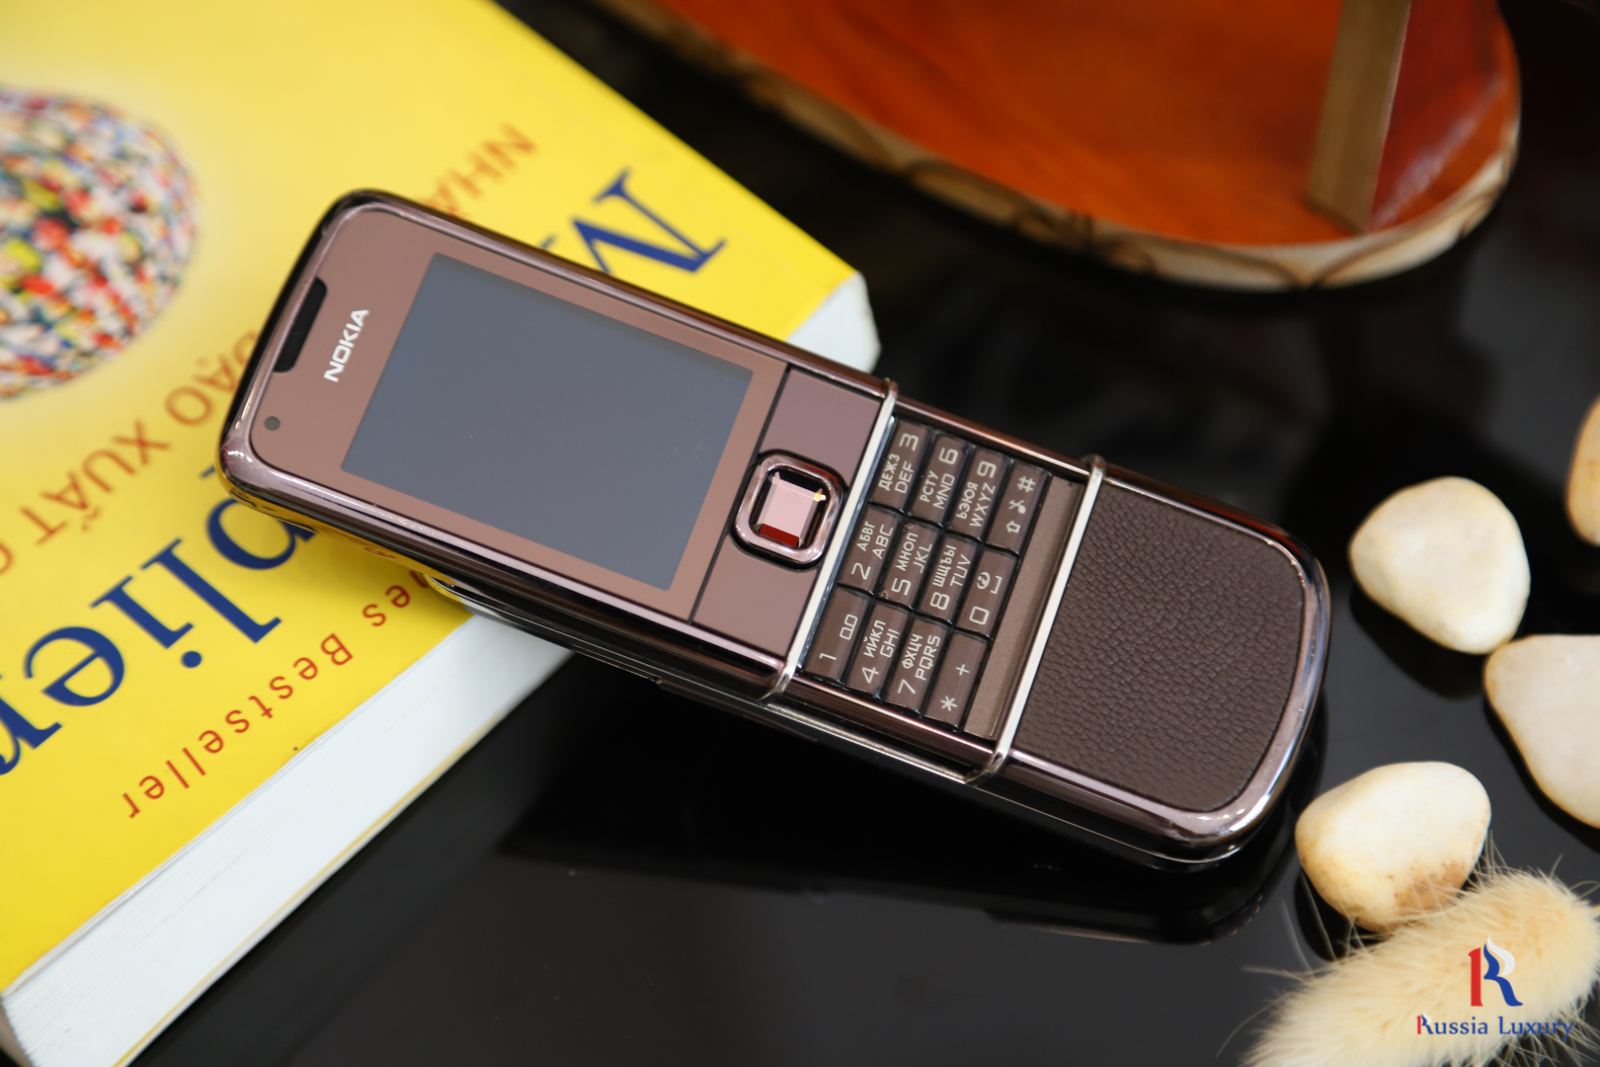 Thế giới Nokia 8800 Nâu đẹp dành cho các doanh nhân chuộng đồ cổ